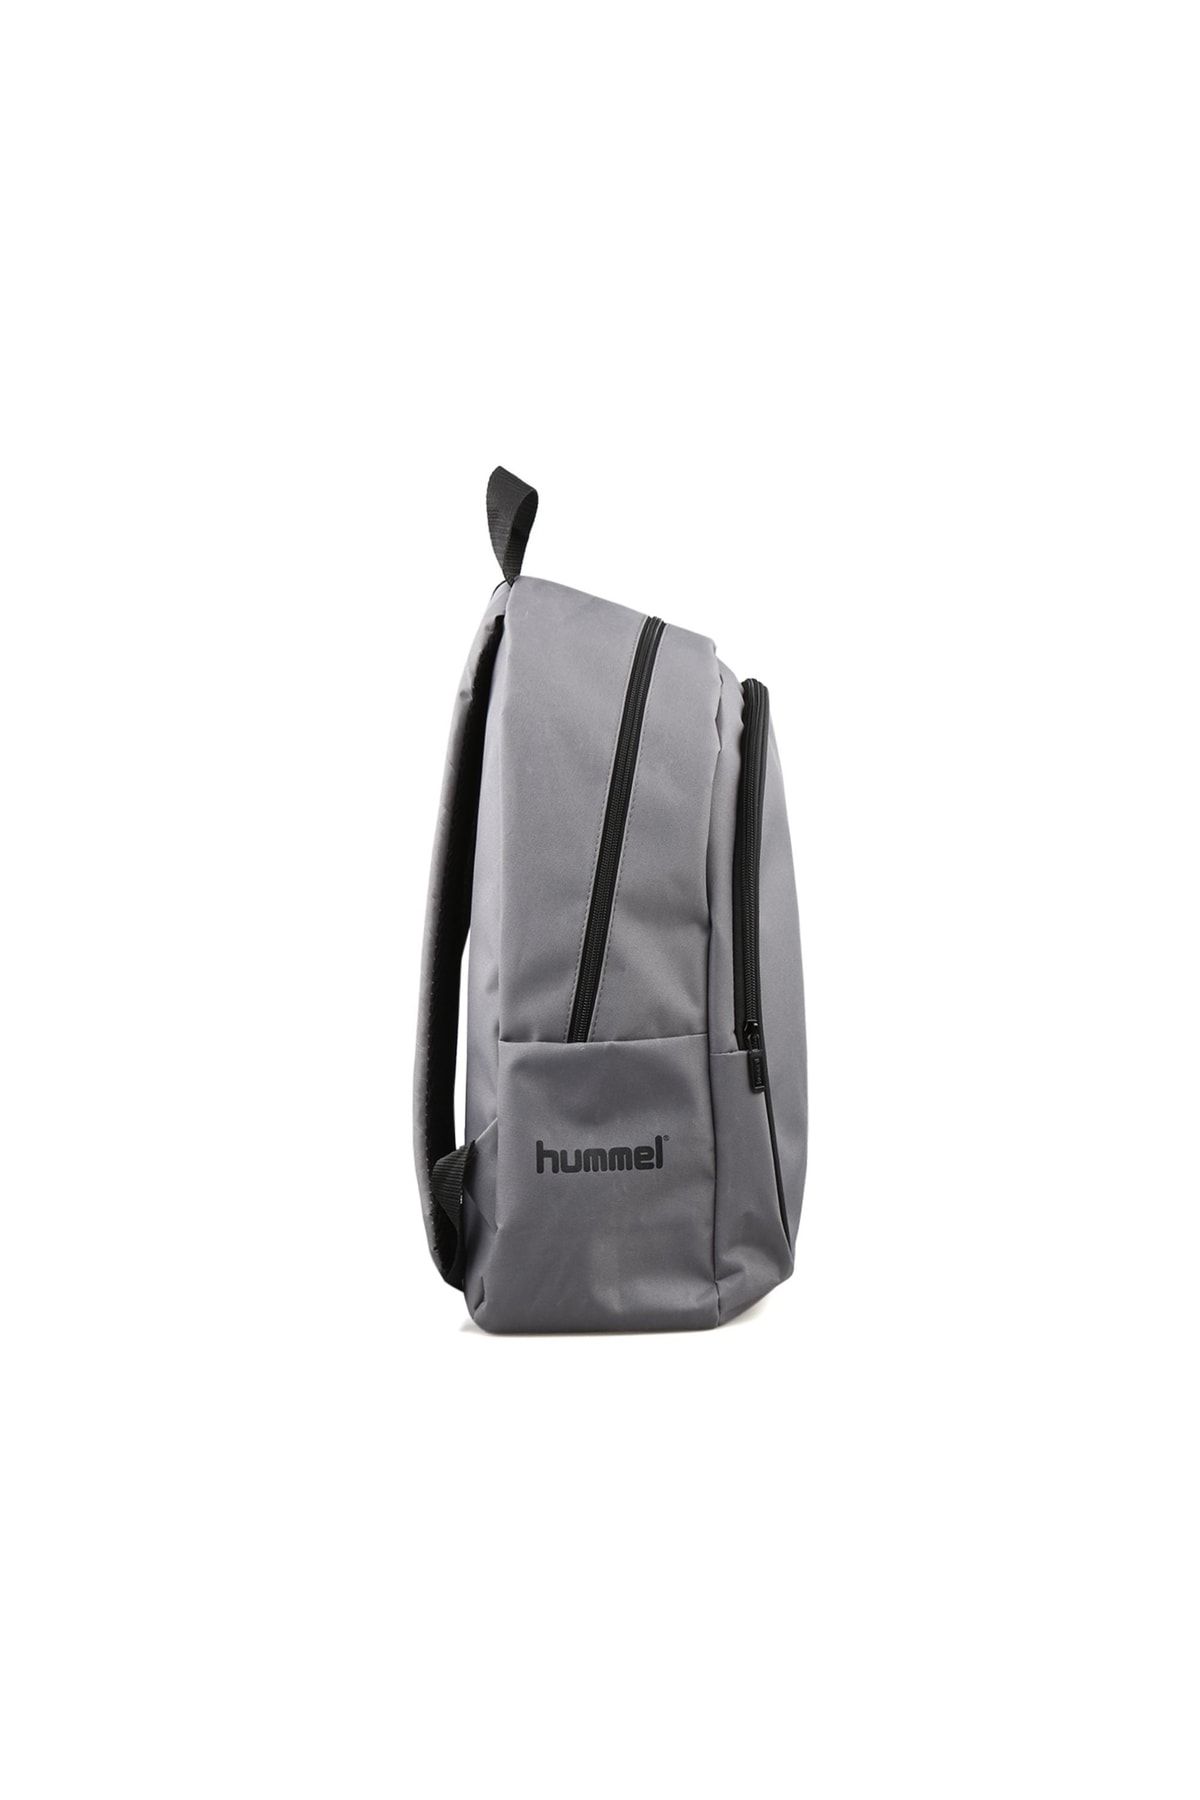 hummel Darrel Bag Pack Backpack 980090-2001